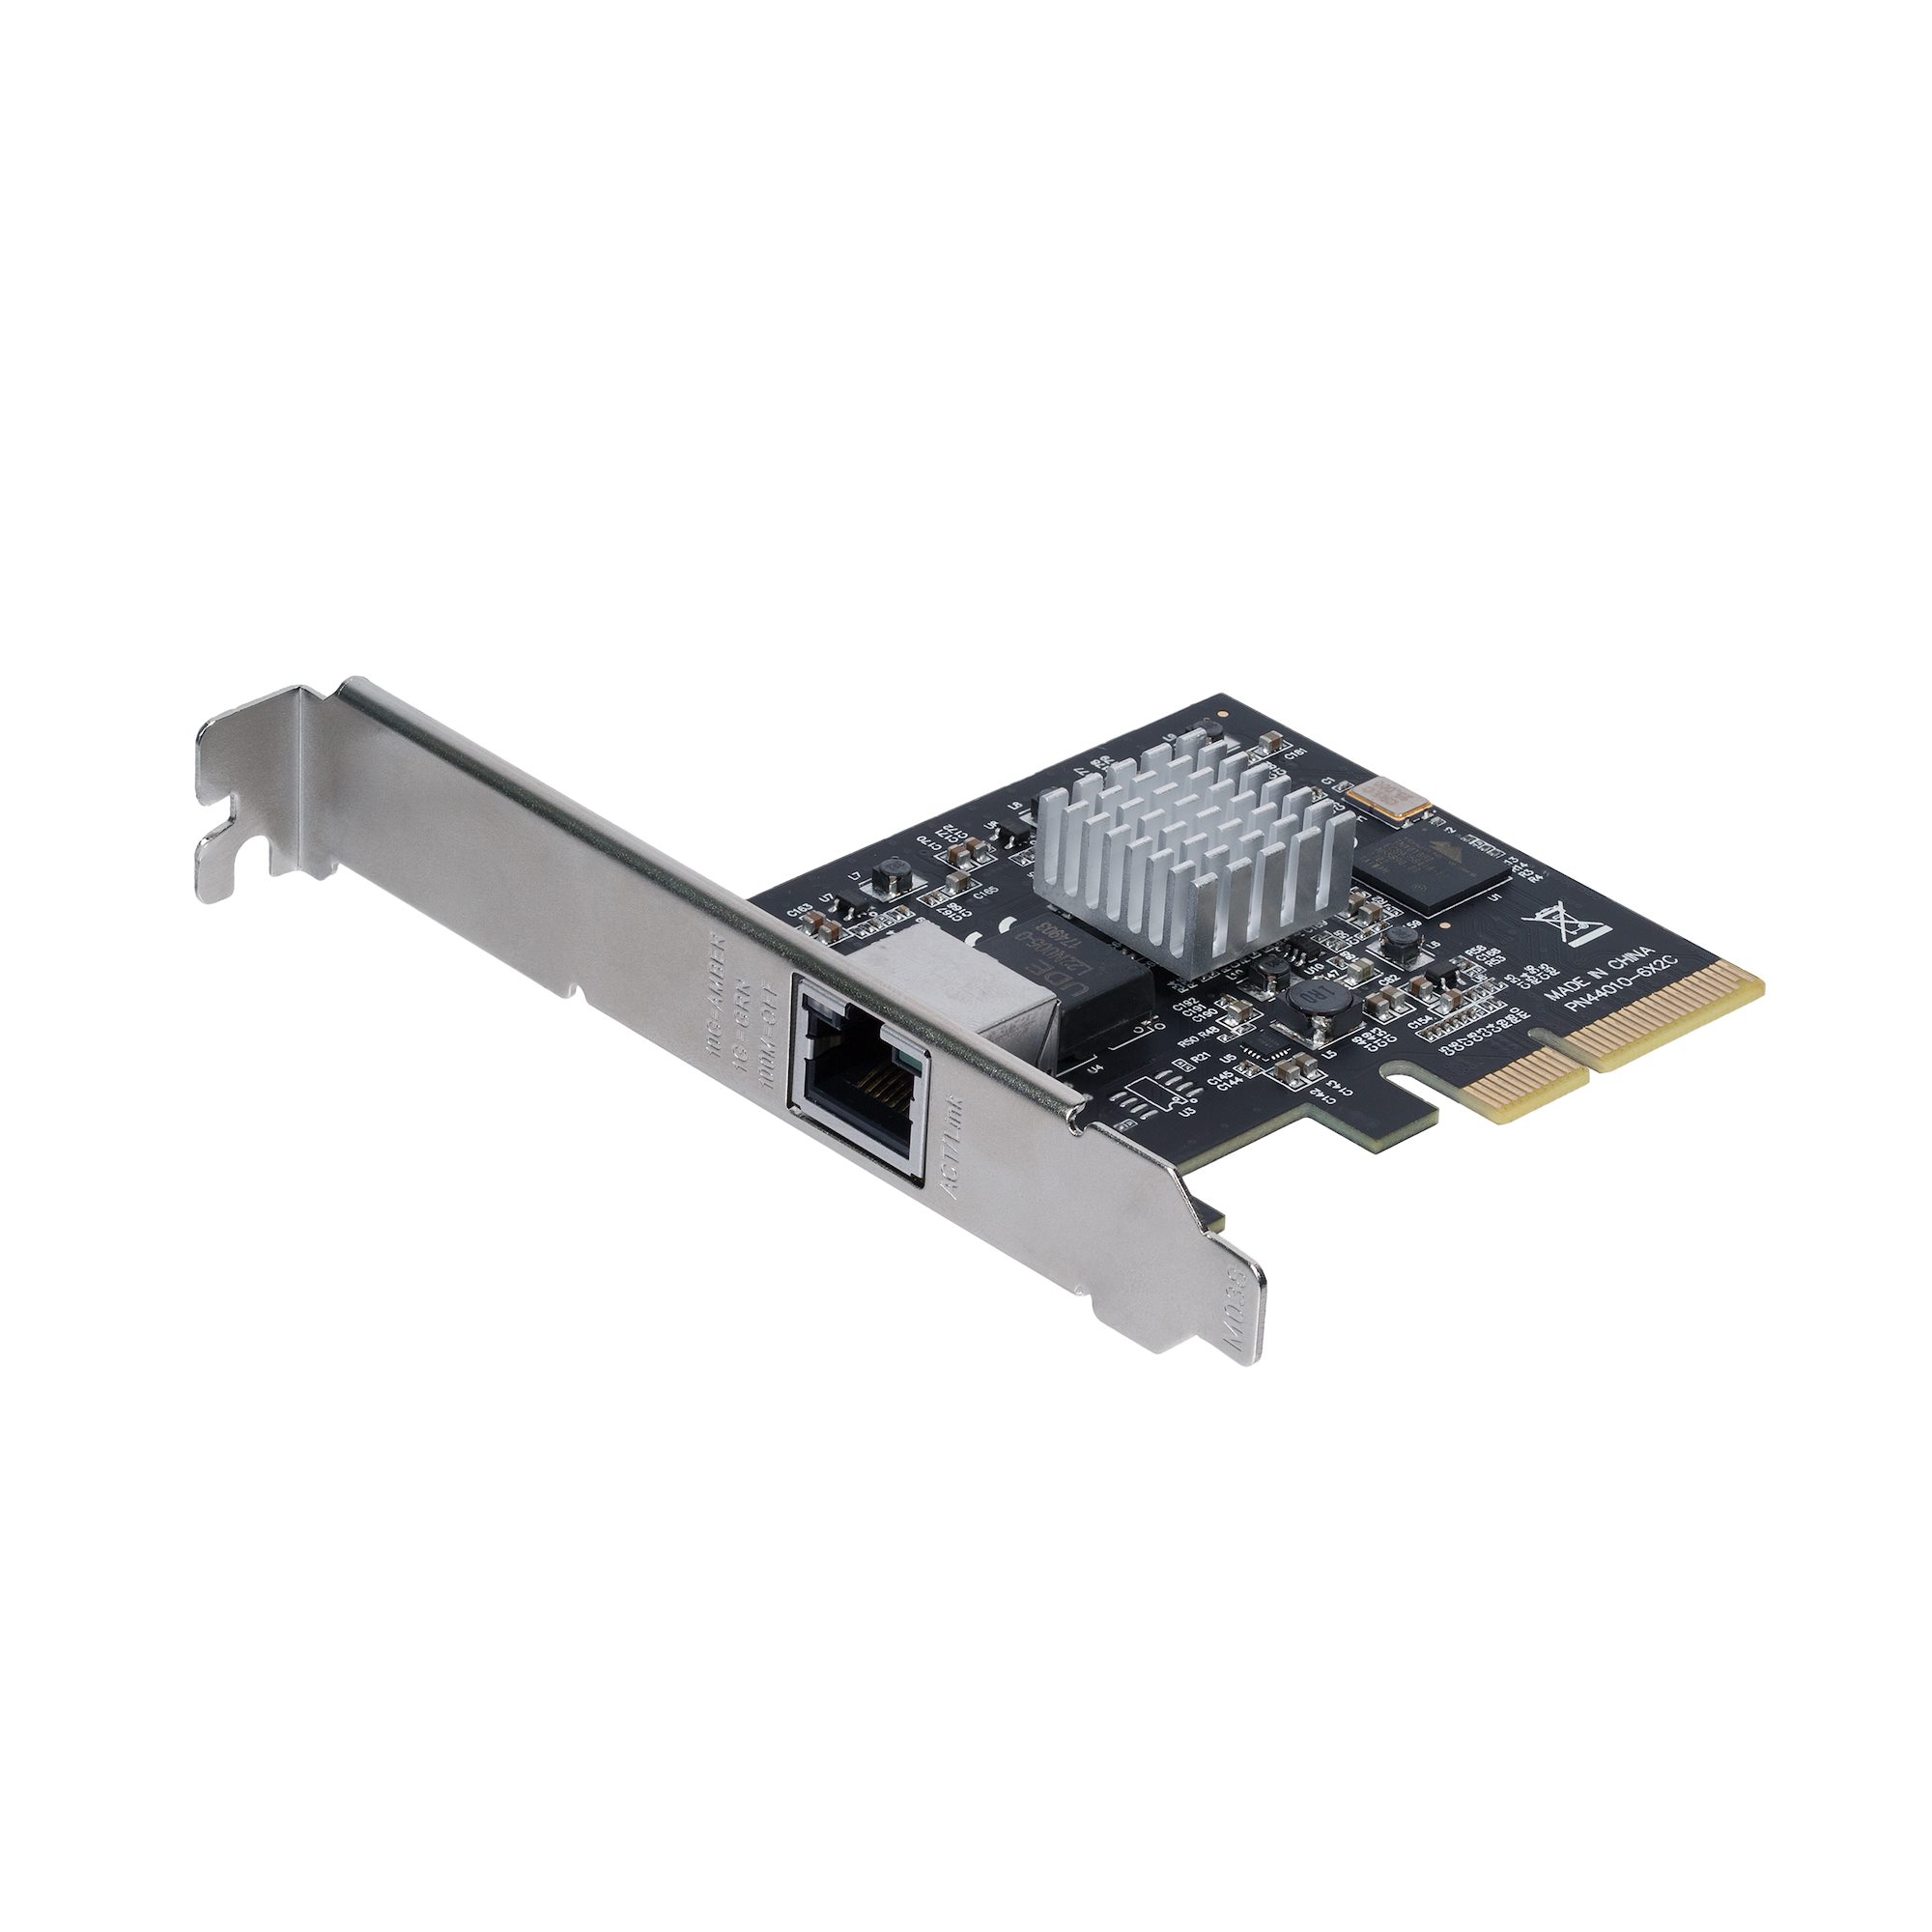 5スピード対応PCIe LANカード 10GBase-T NBASE-T ネットワークアダプタ カード 日本